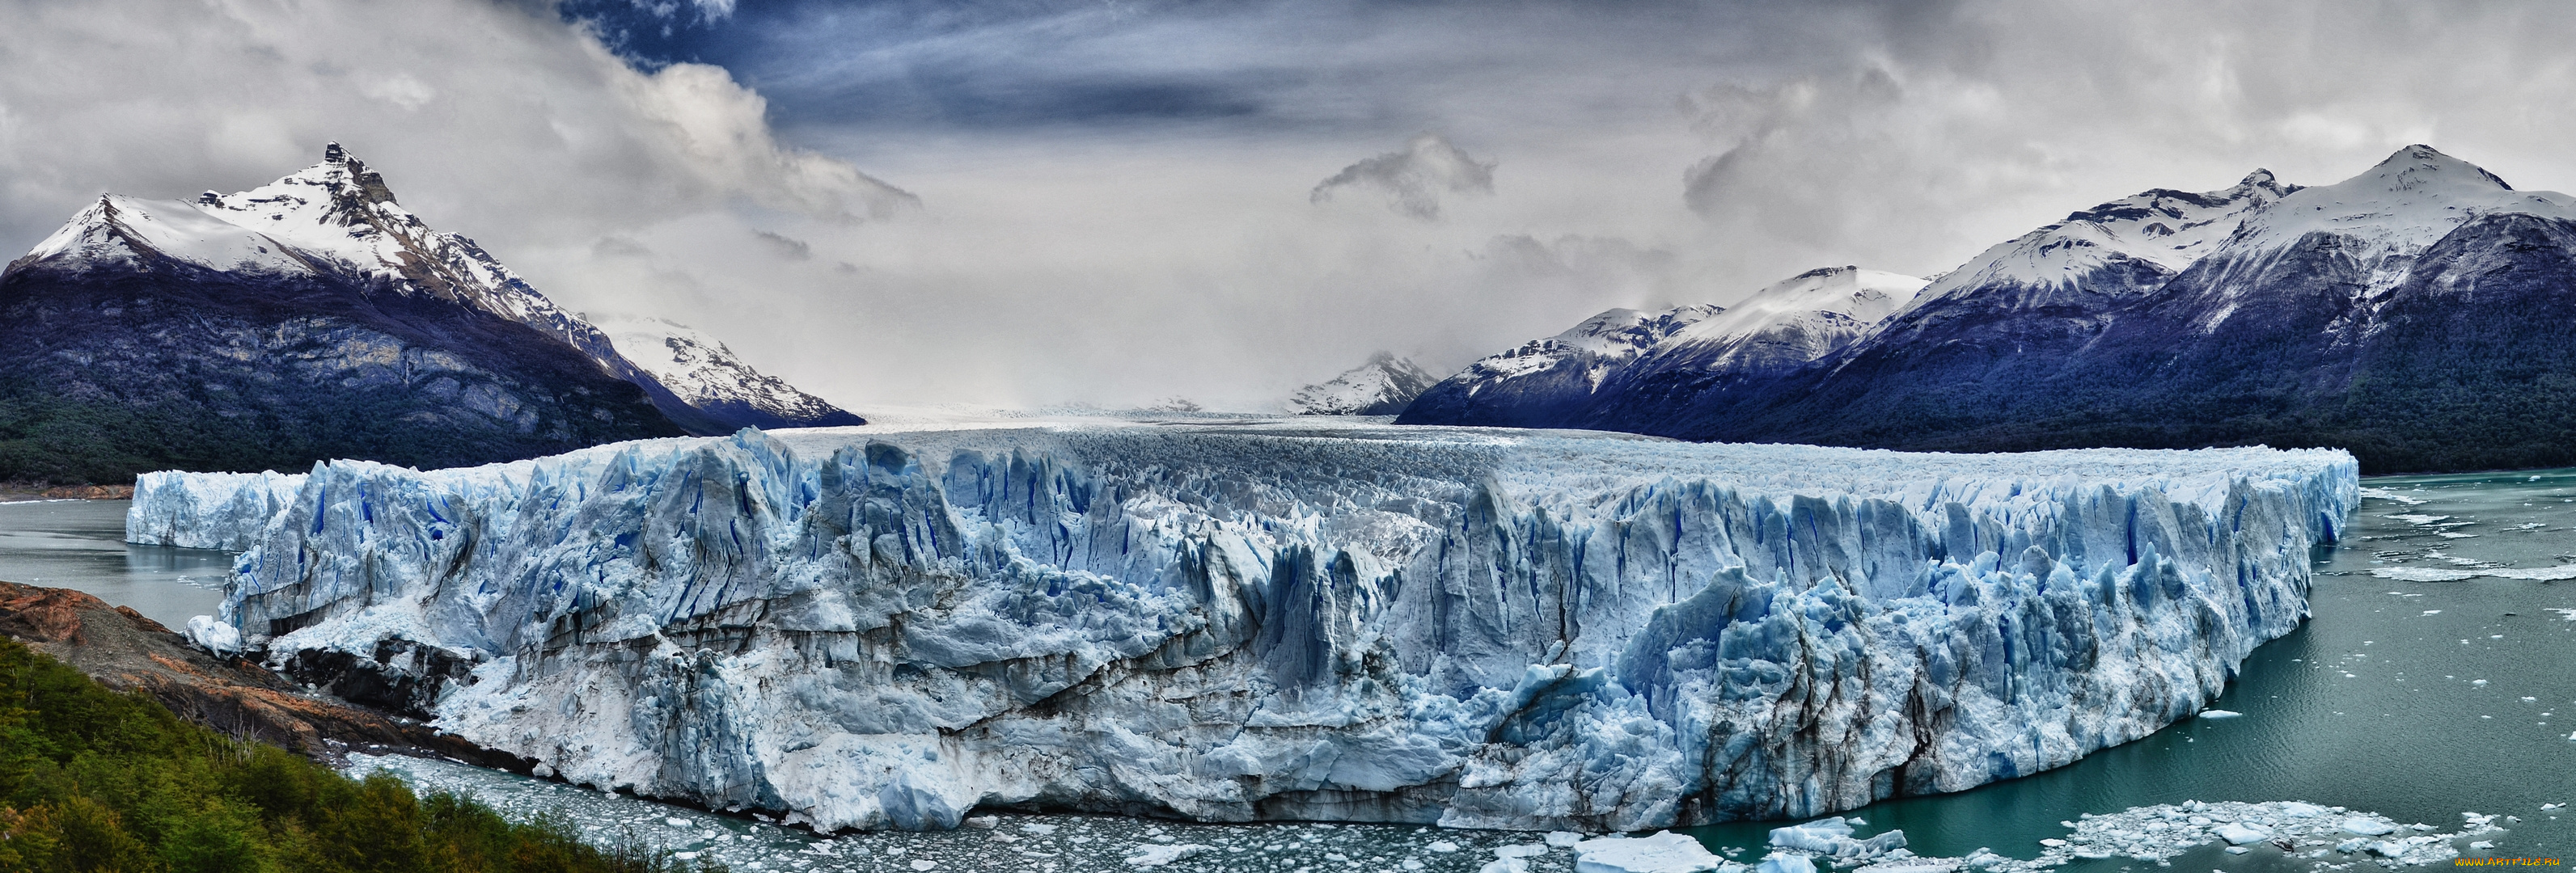 природа, айсберги, ледники, панорама, аргентина